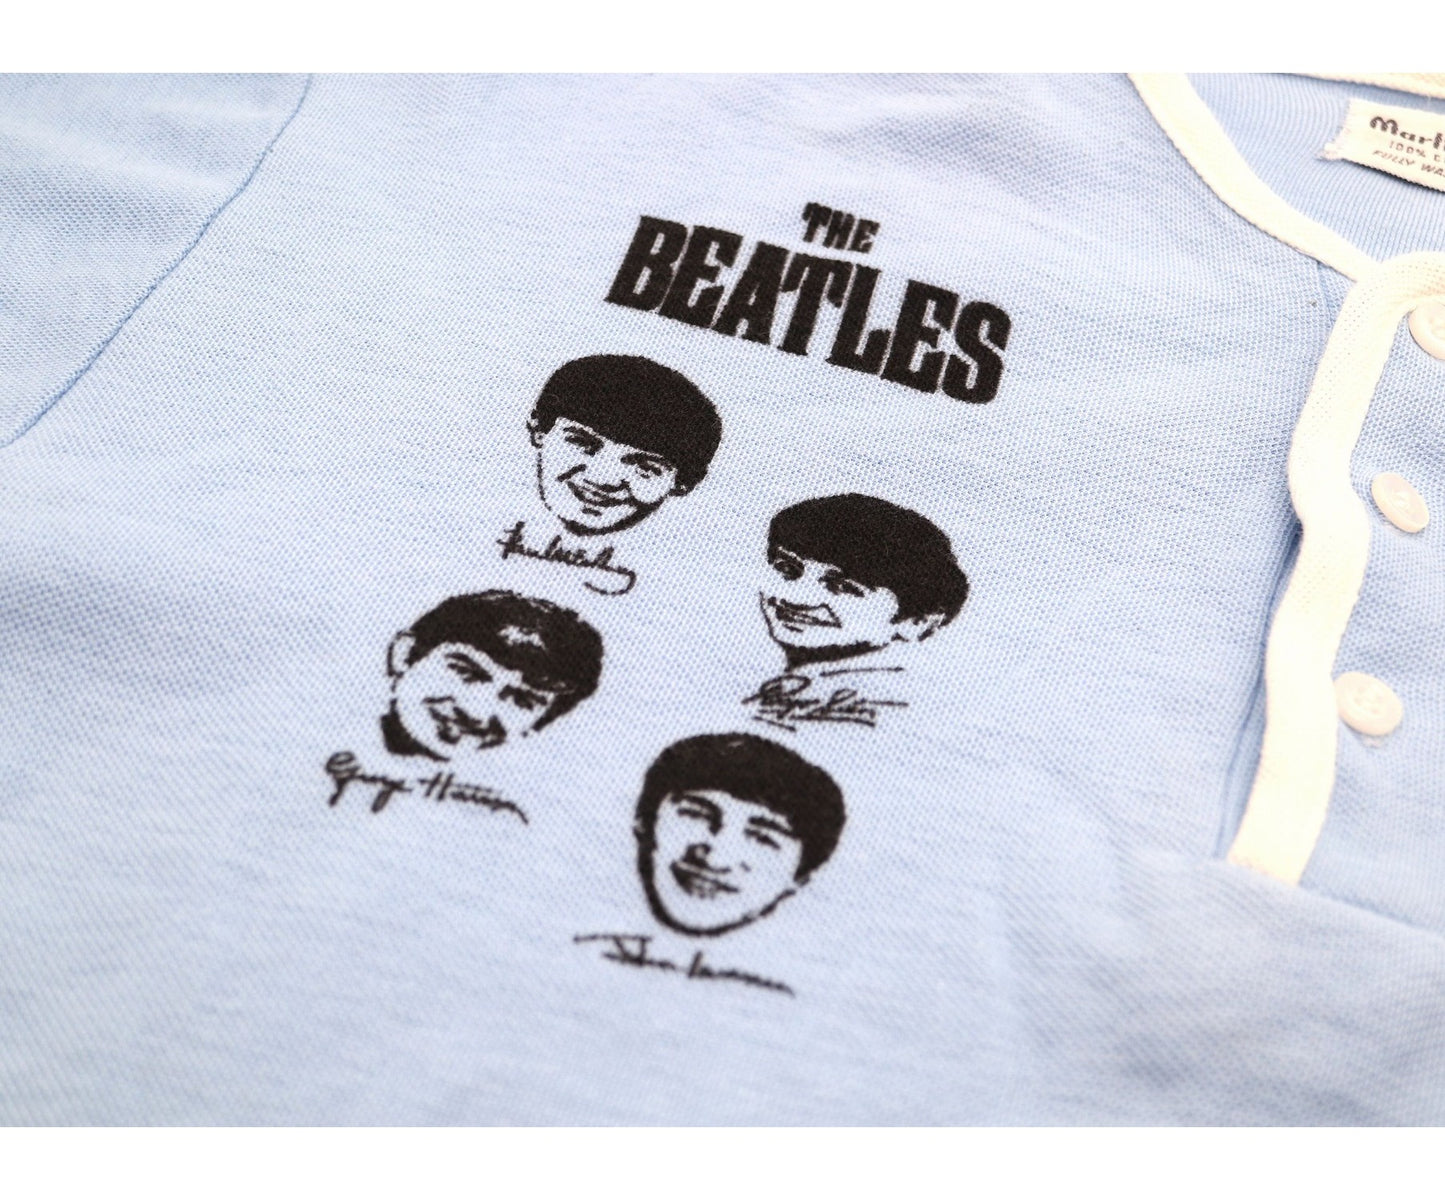 [เสื้อผ้าวินเทจ] เสื้อยืด The Beatles Band 60's